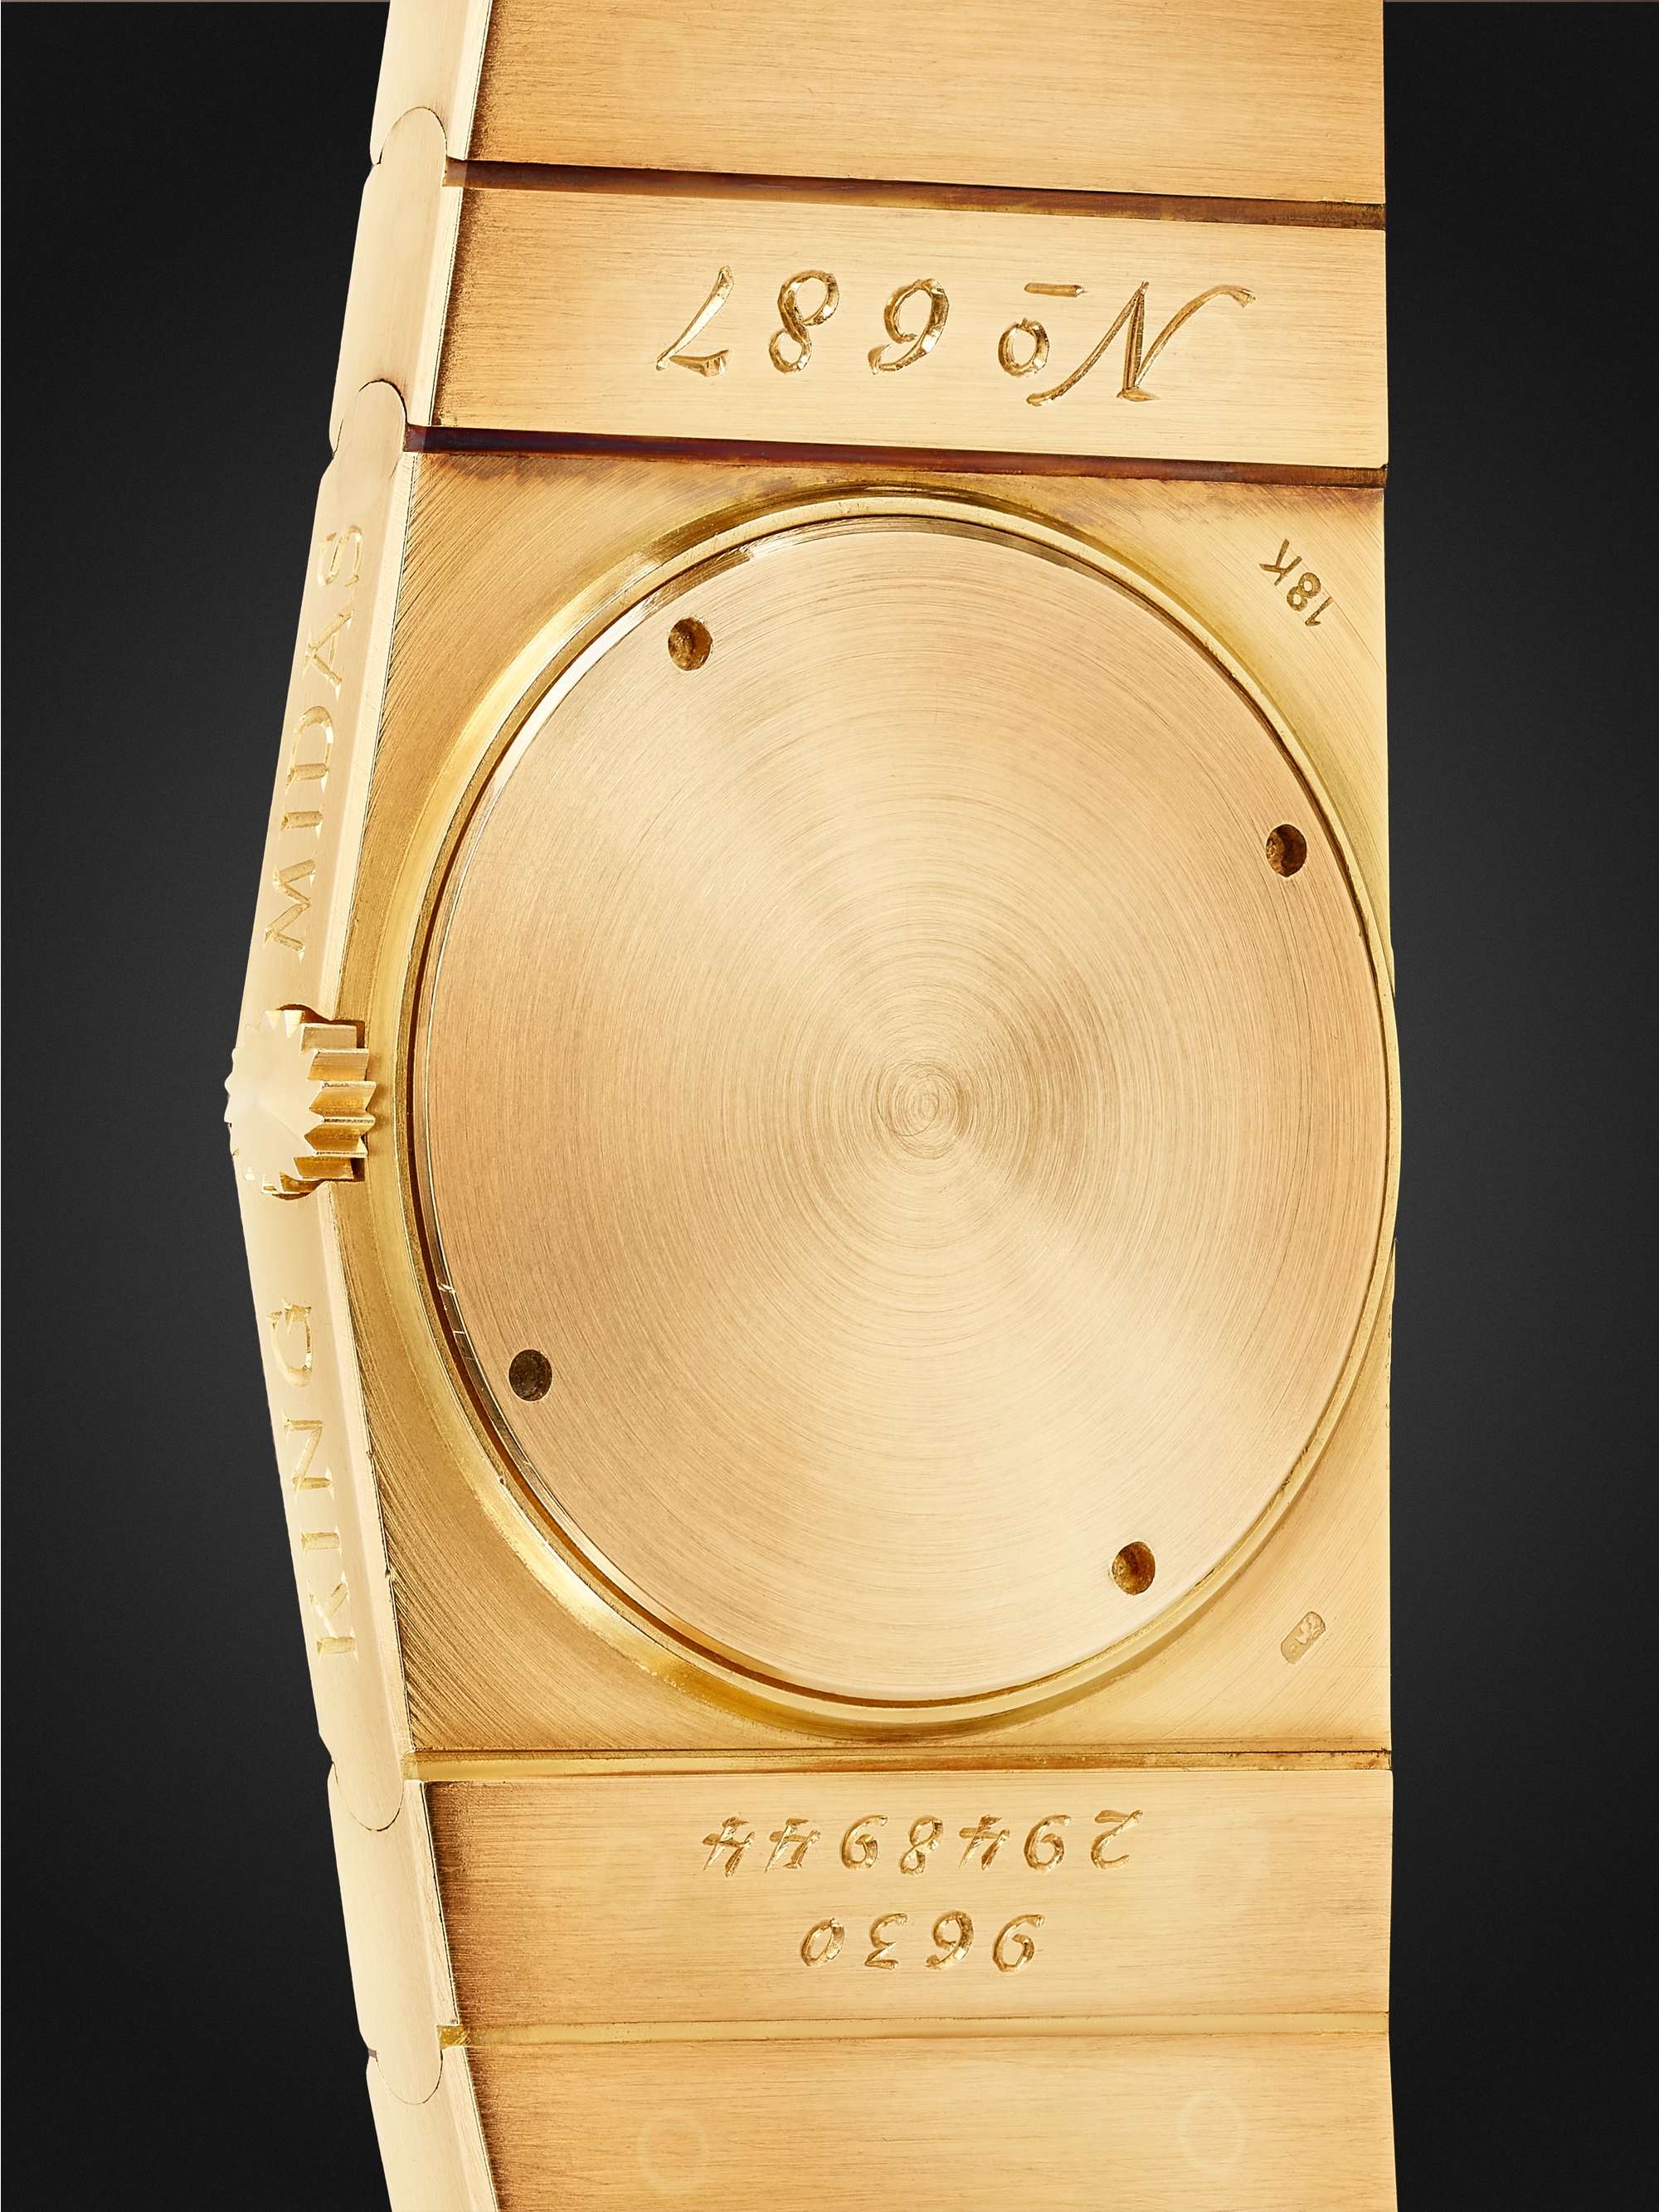 WATCH BROTHERS LONDON Vintage 1960s Rolex King Midas Hand-Wound 18-Karat Gold Watch, Ref. No. 9630